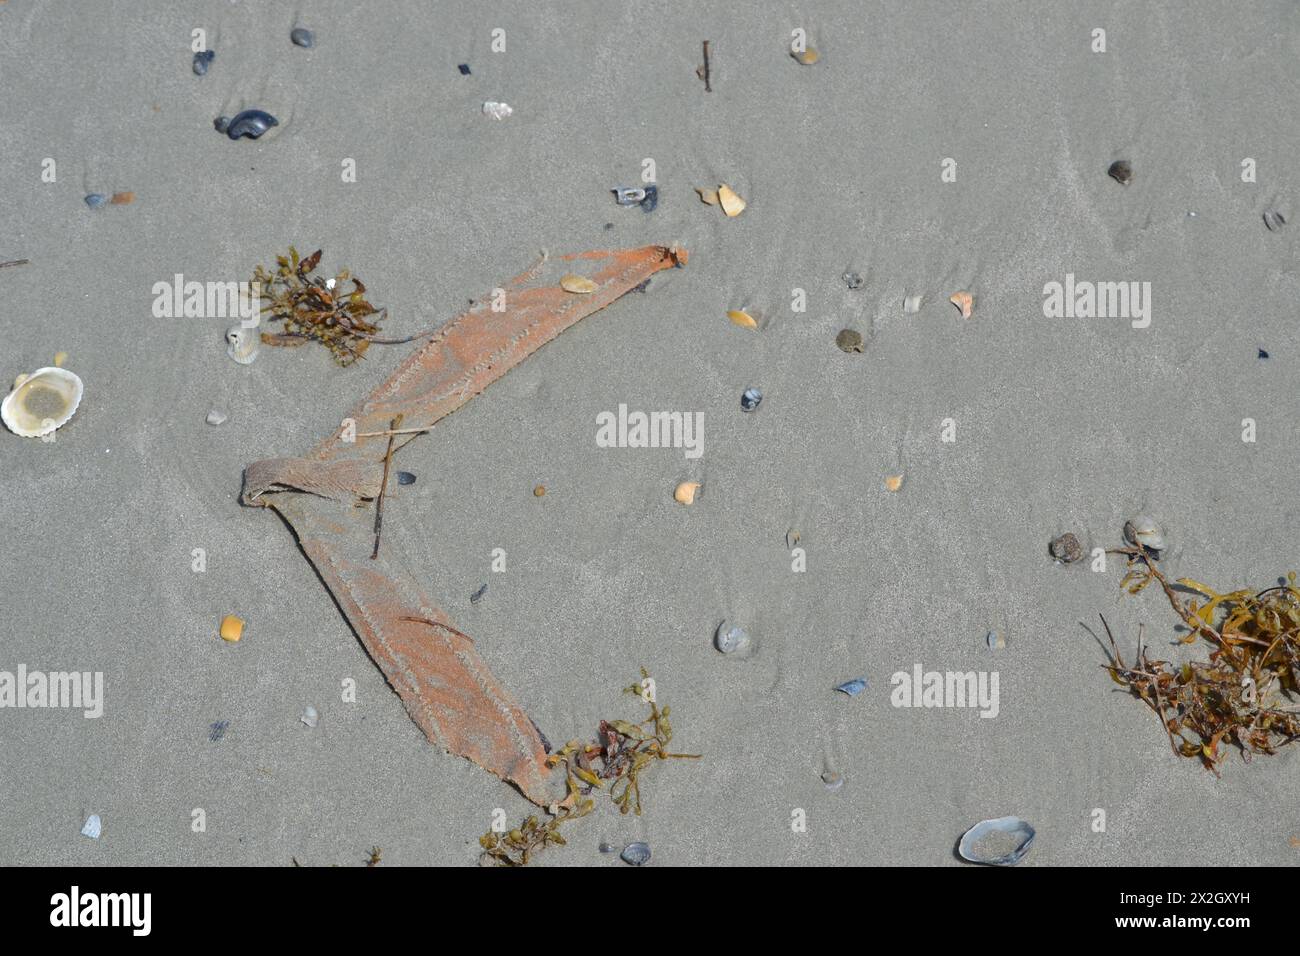 Ein gebrochener Flip-Flop-Riemen liegt auf dem Sand in der Nähe des Meeres, nach links gerichtet, umgeben von Muscheln und Algen. Stockfoto